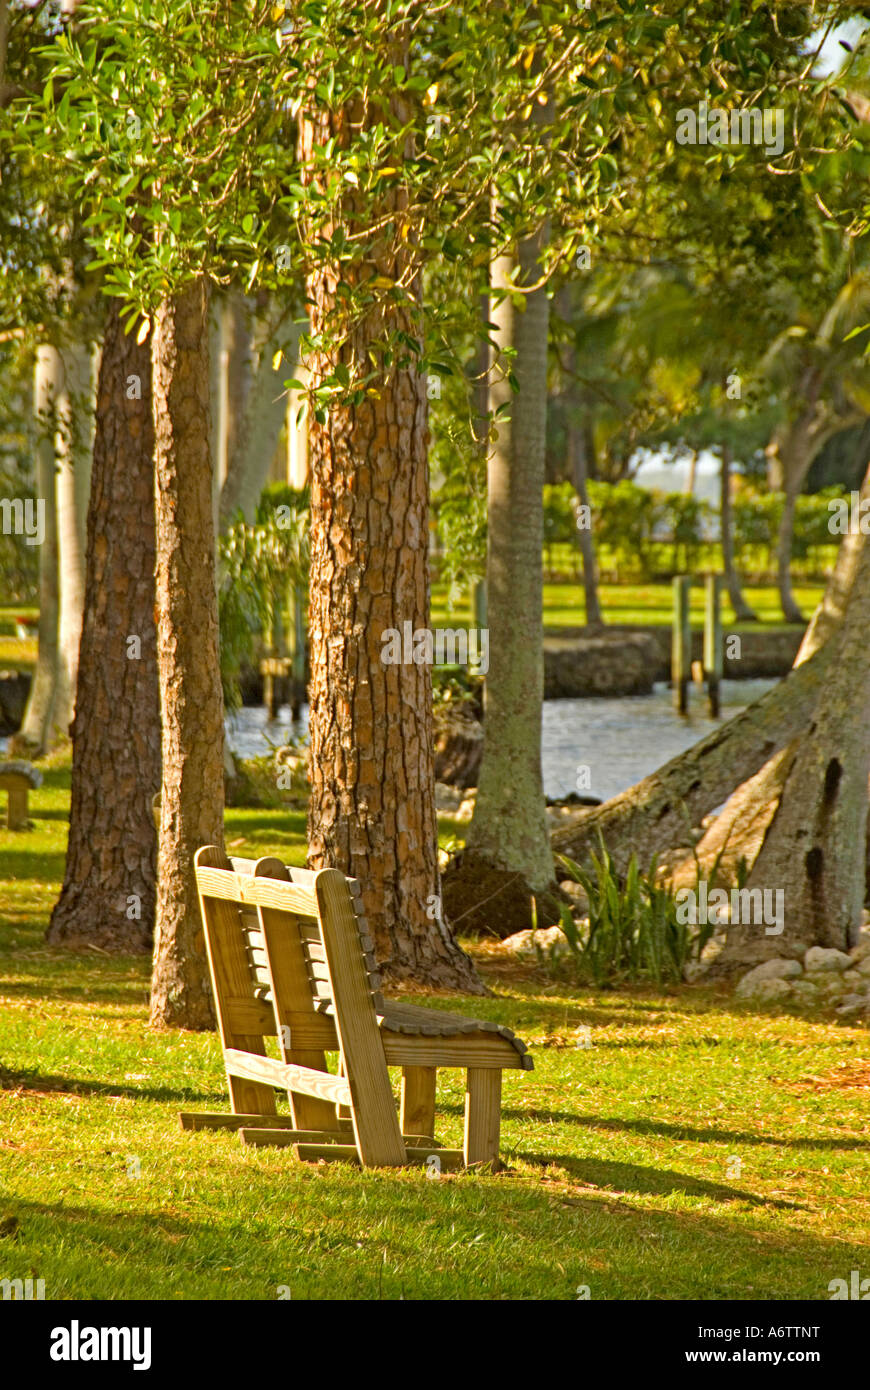 Thomas Edison Winter home Immobilien Fort Myers Florida Botanischer Garten mit einer Bank durch den Caloosahatchee River Stockfoto